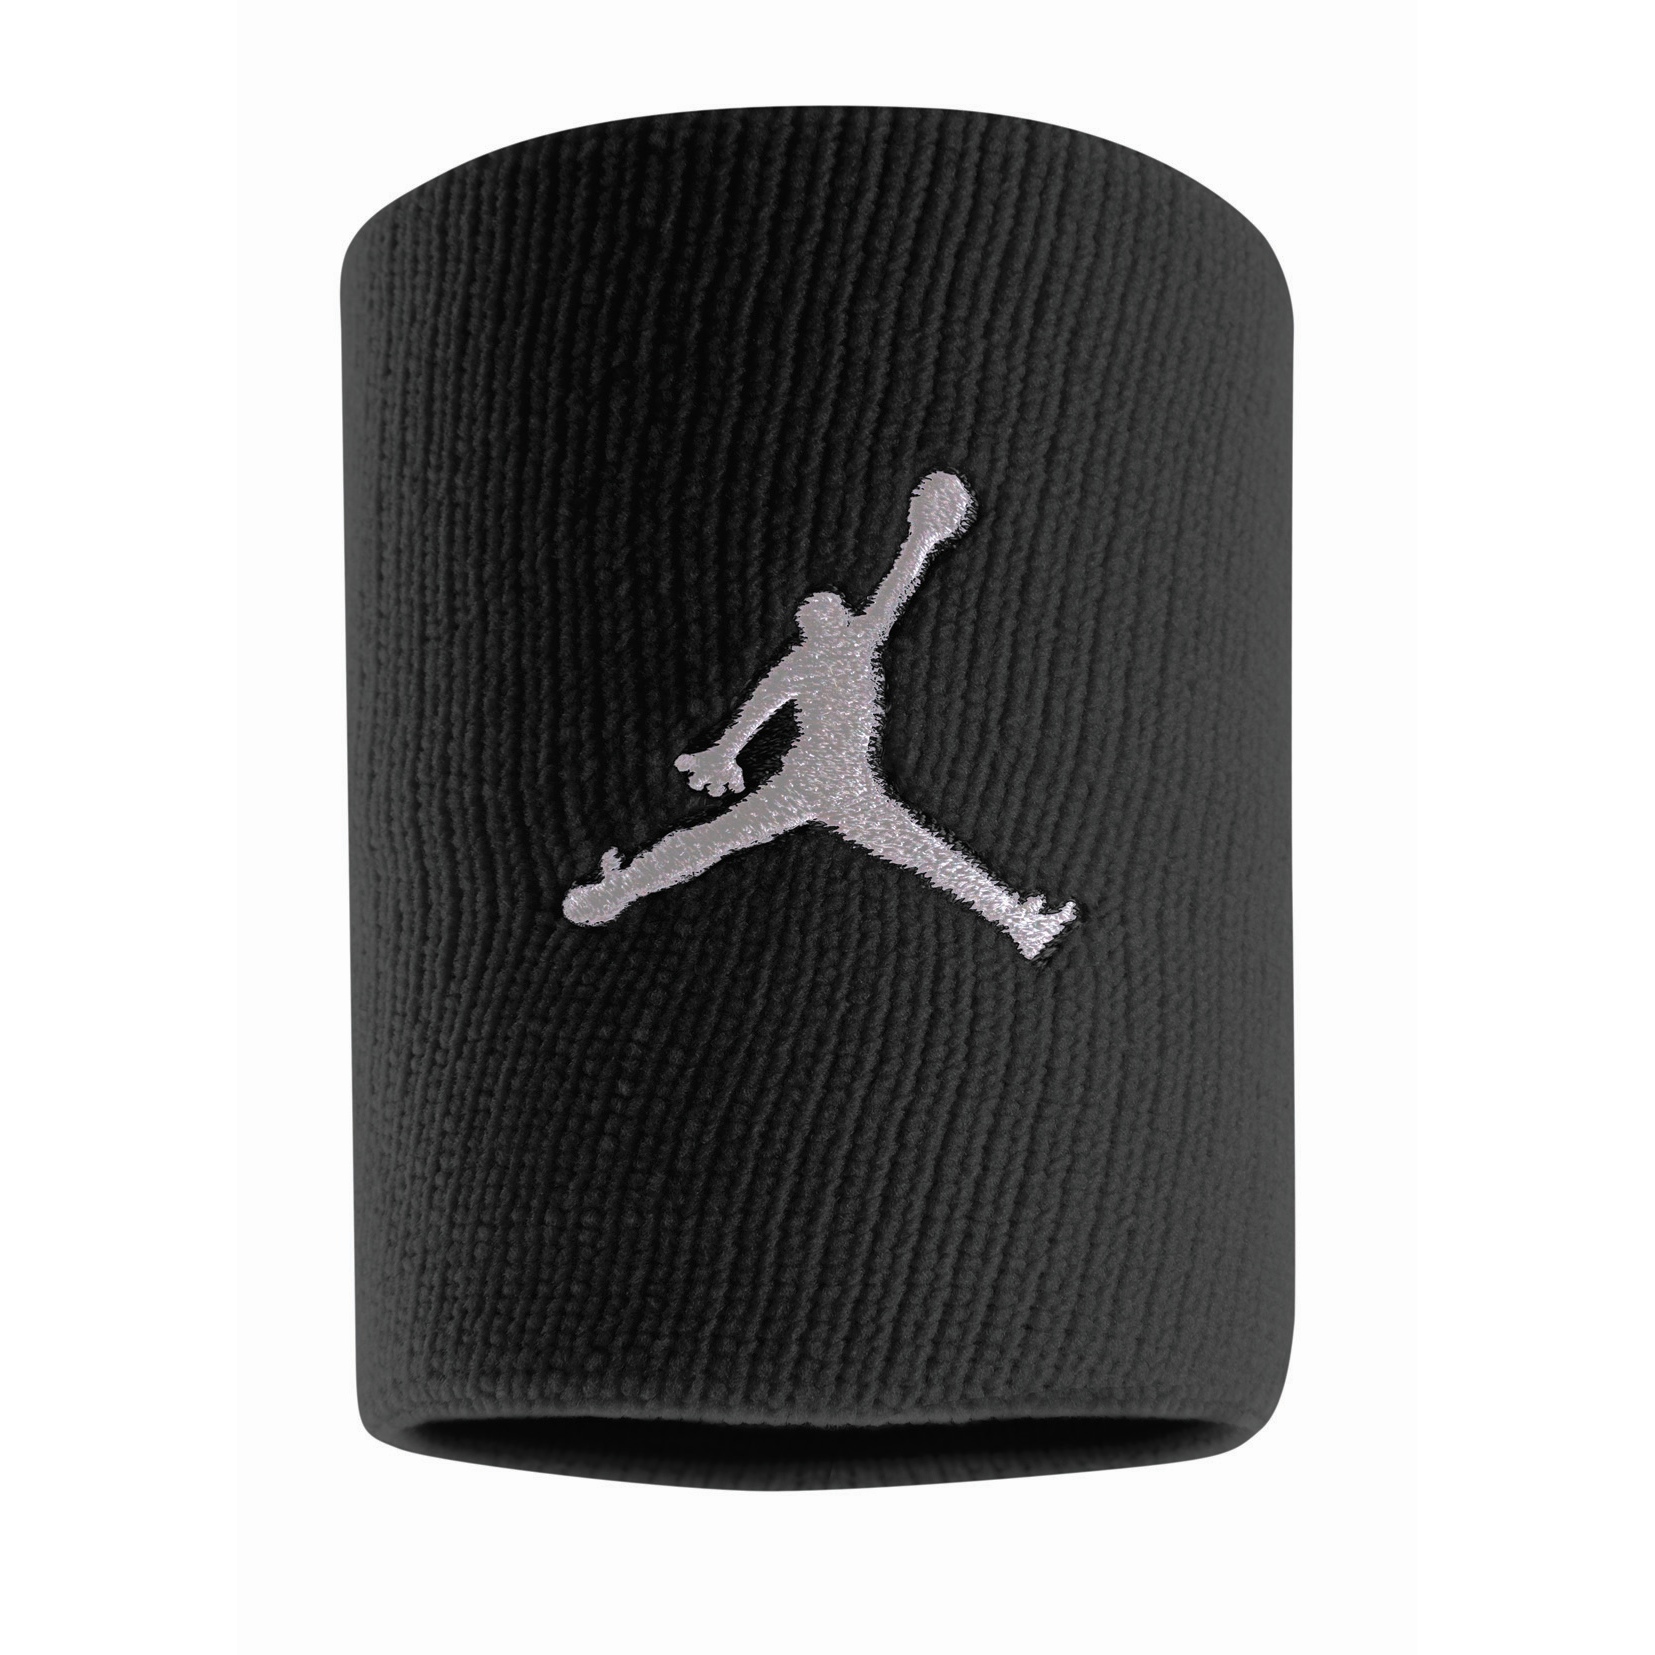 Produktbild von Nike Jordan Jumpman Schweißband - black/white 010